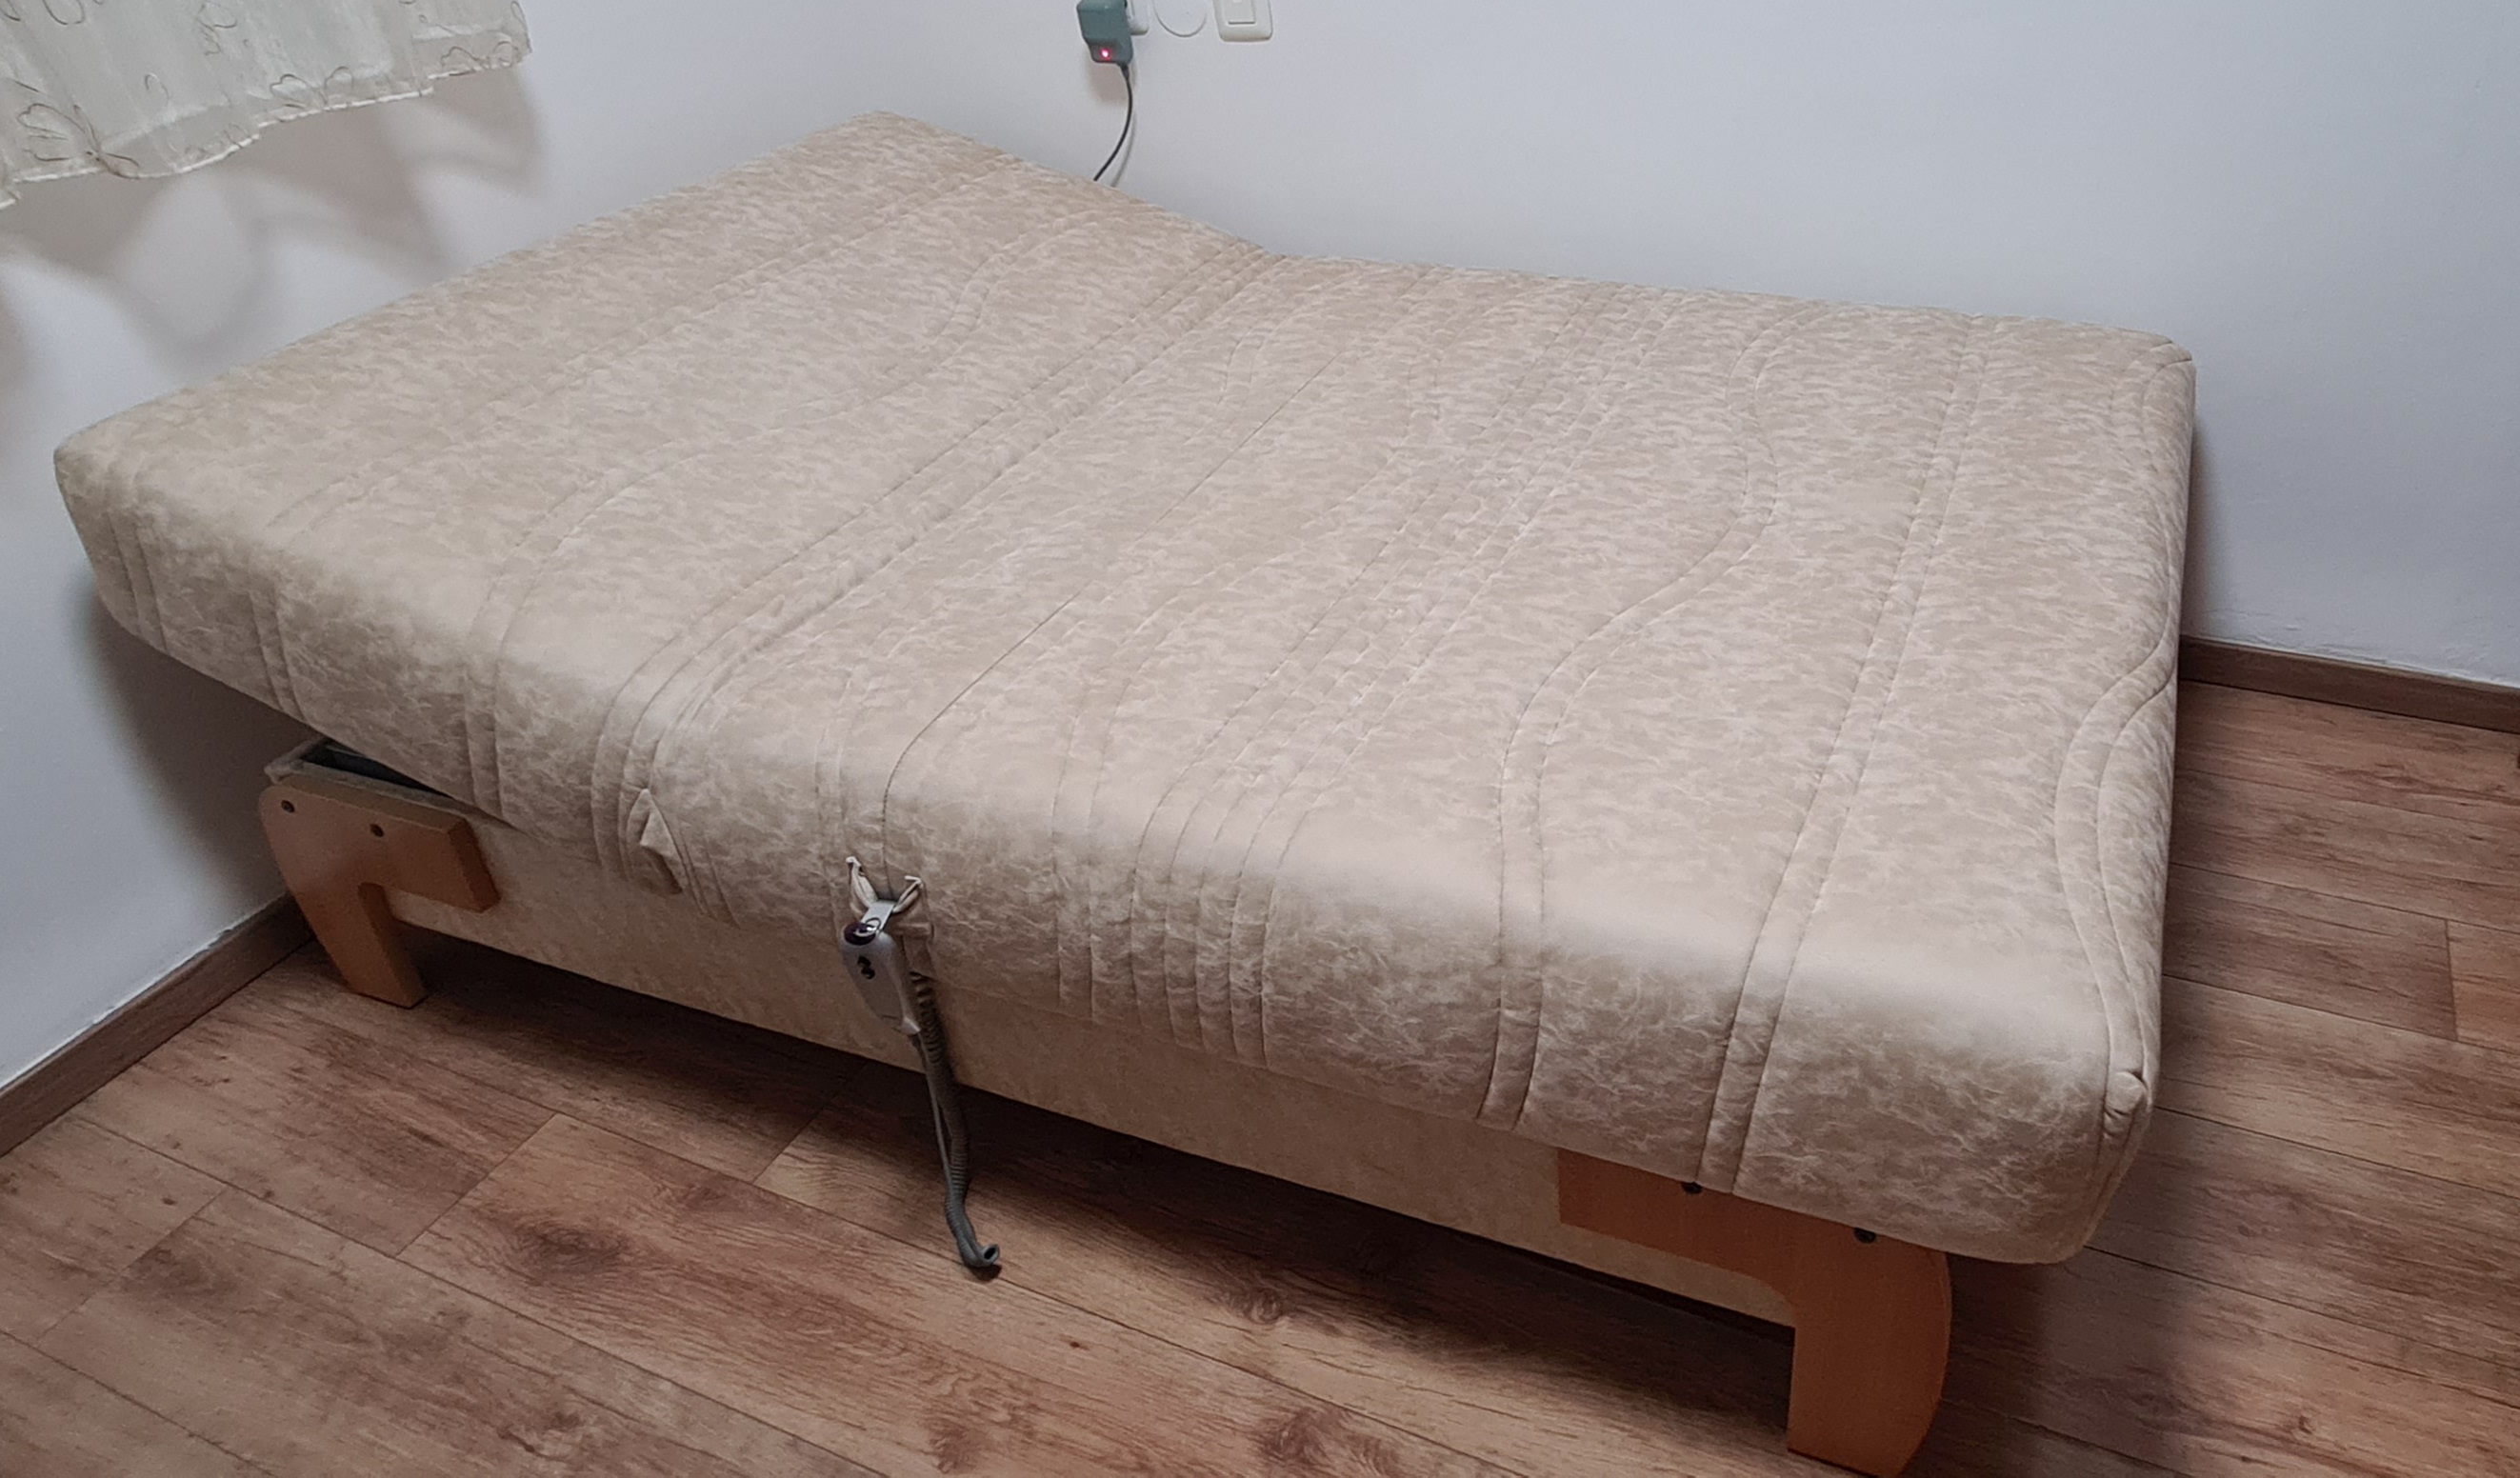 תמונה 5 ,מיטה וחצי ספפה במצב נדיר למכירה בנהריה ריהוט  מיטות